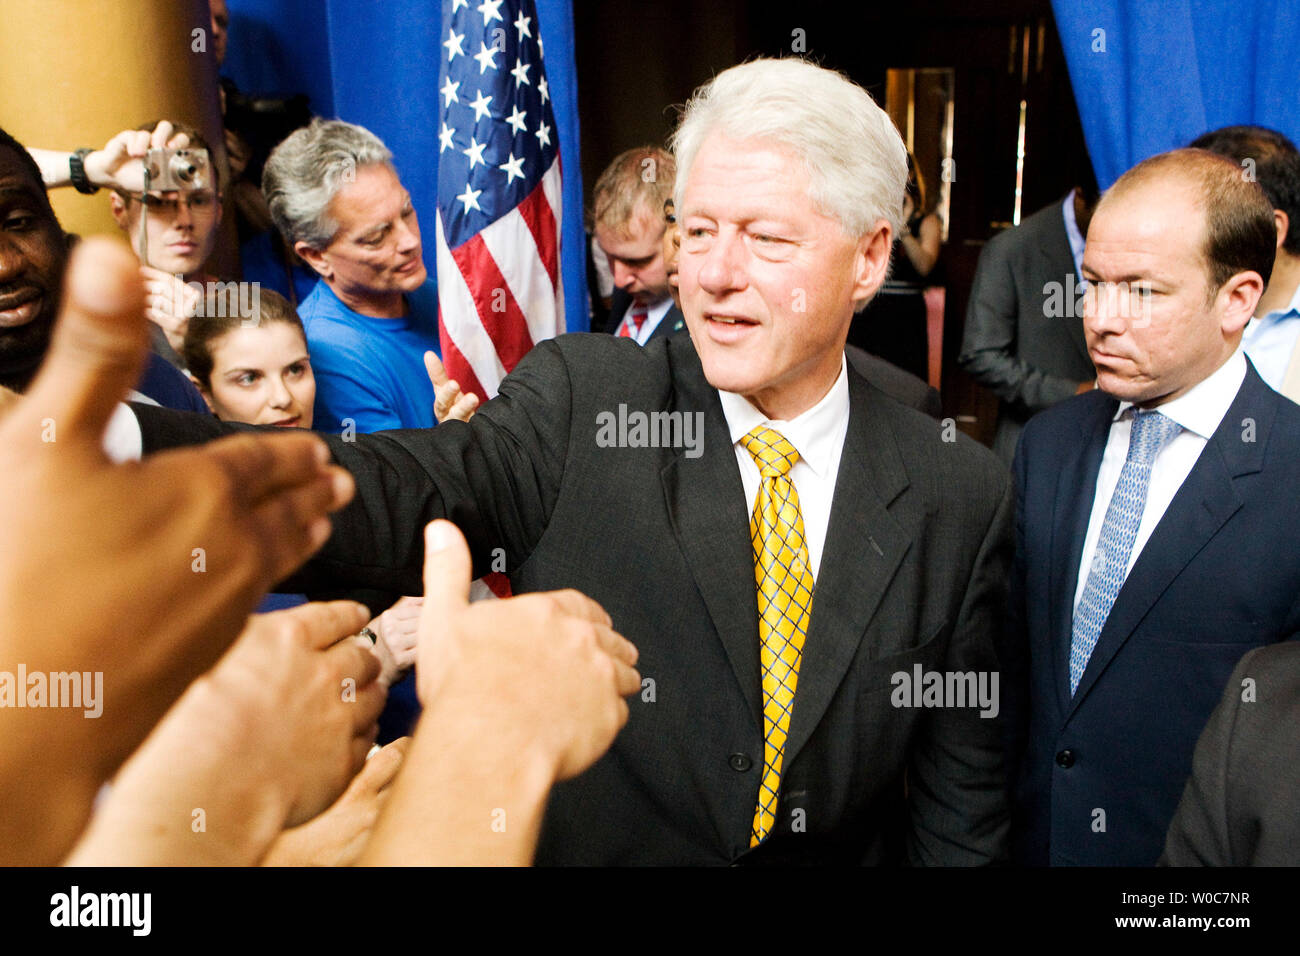 L'ancien Président Bill Clinton, signe des autographes après un événement de campagne au National Building Museum de Washington le 7 juin 2008. Clinton formellement suspendu sa campagne pour le président et approuvé le candidat démocrate, Barack Obama D-IL. (Photo d'UPI/Patrick D. McDermott) Banque D'Images